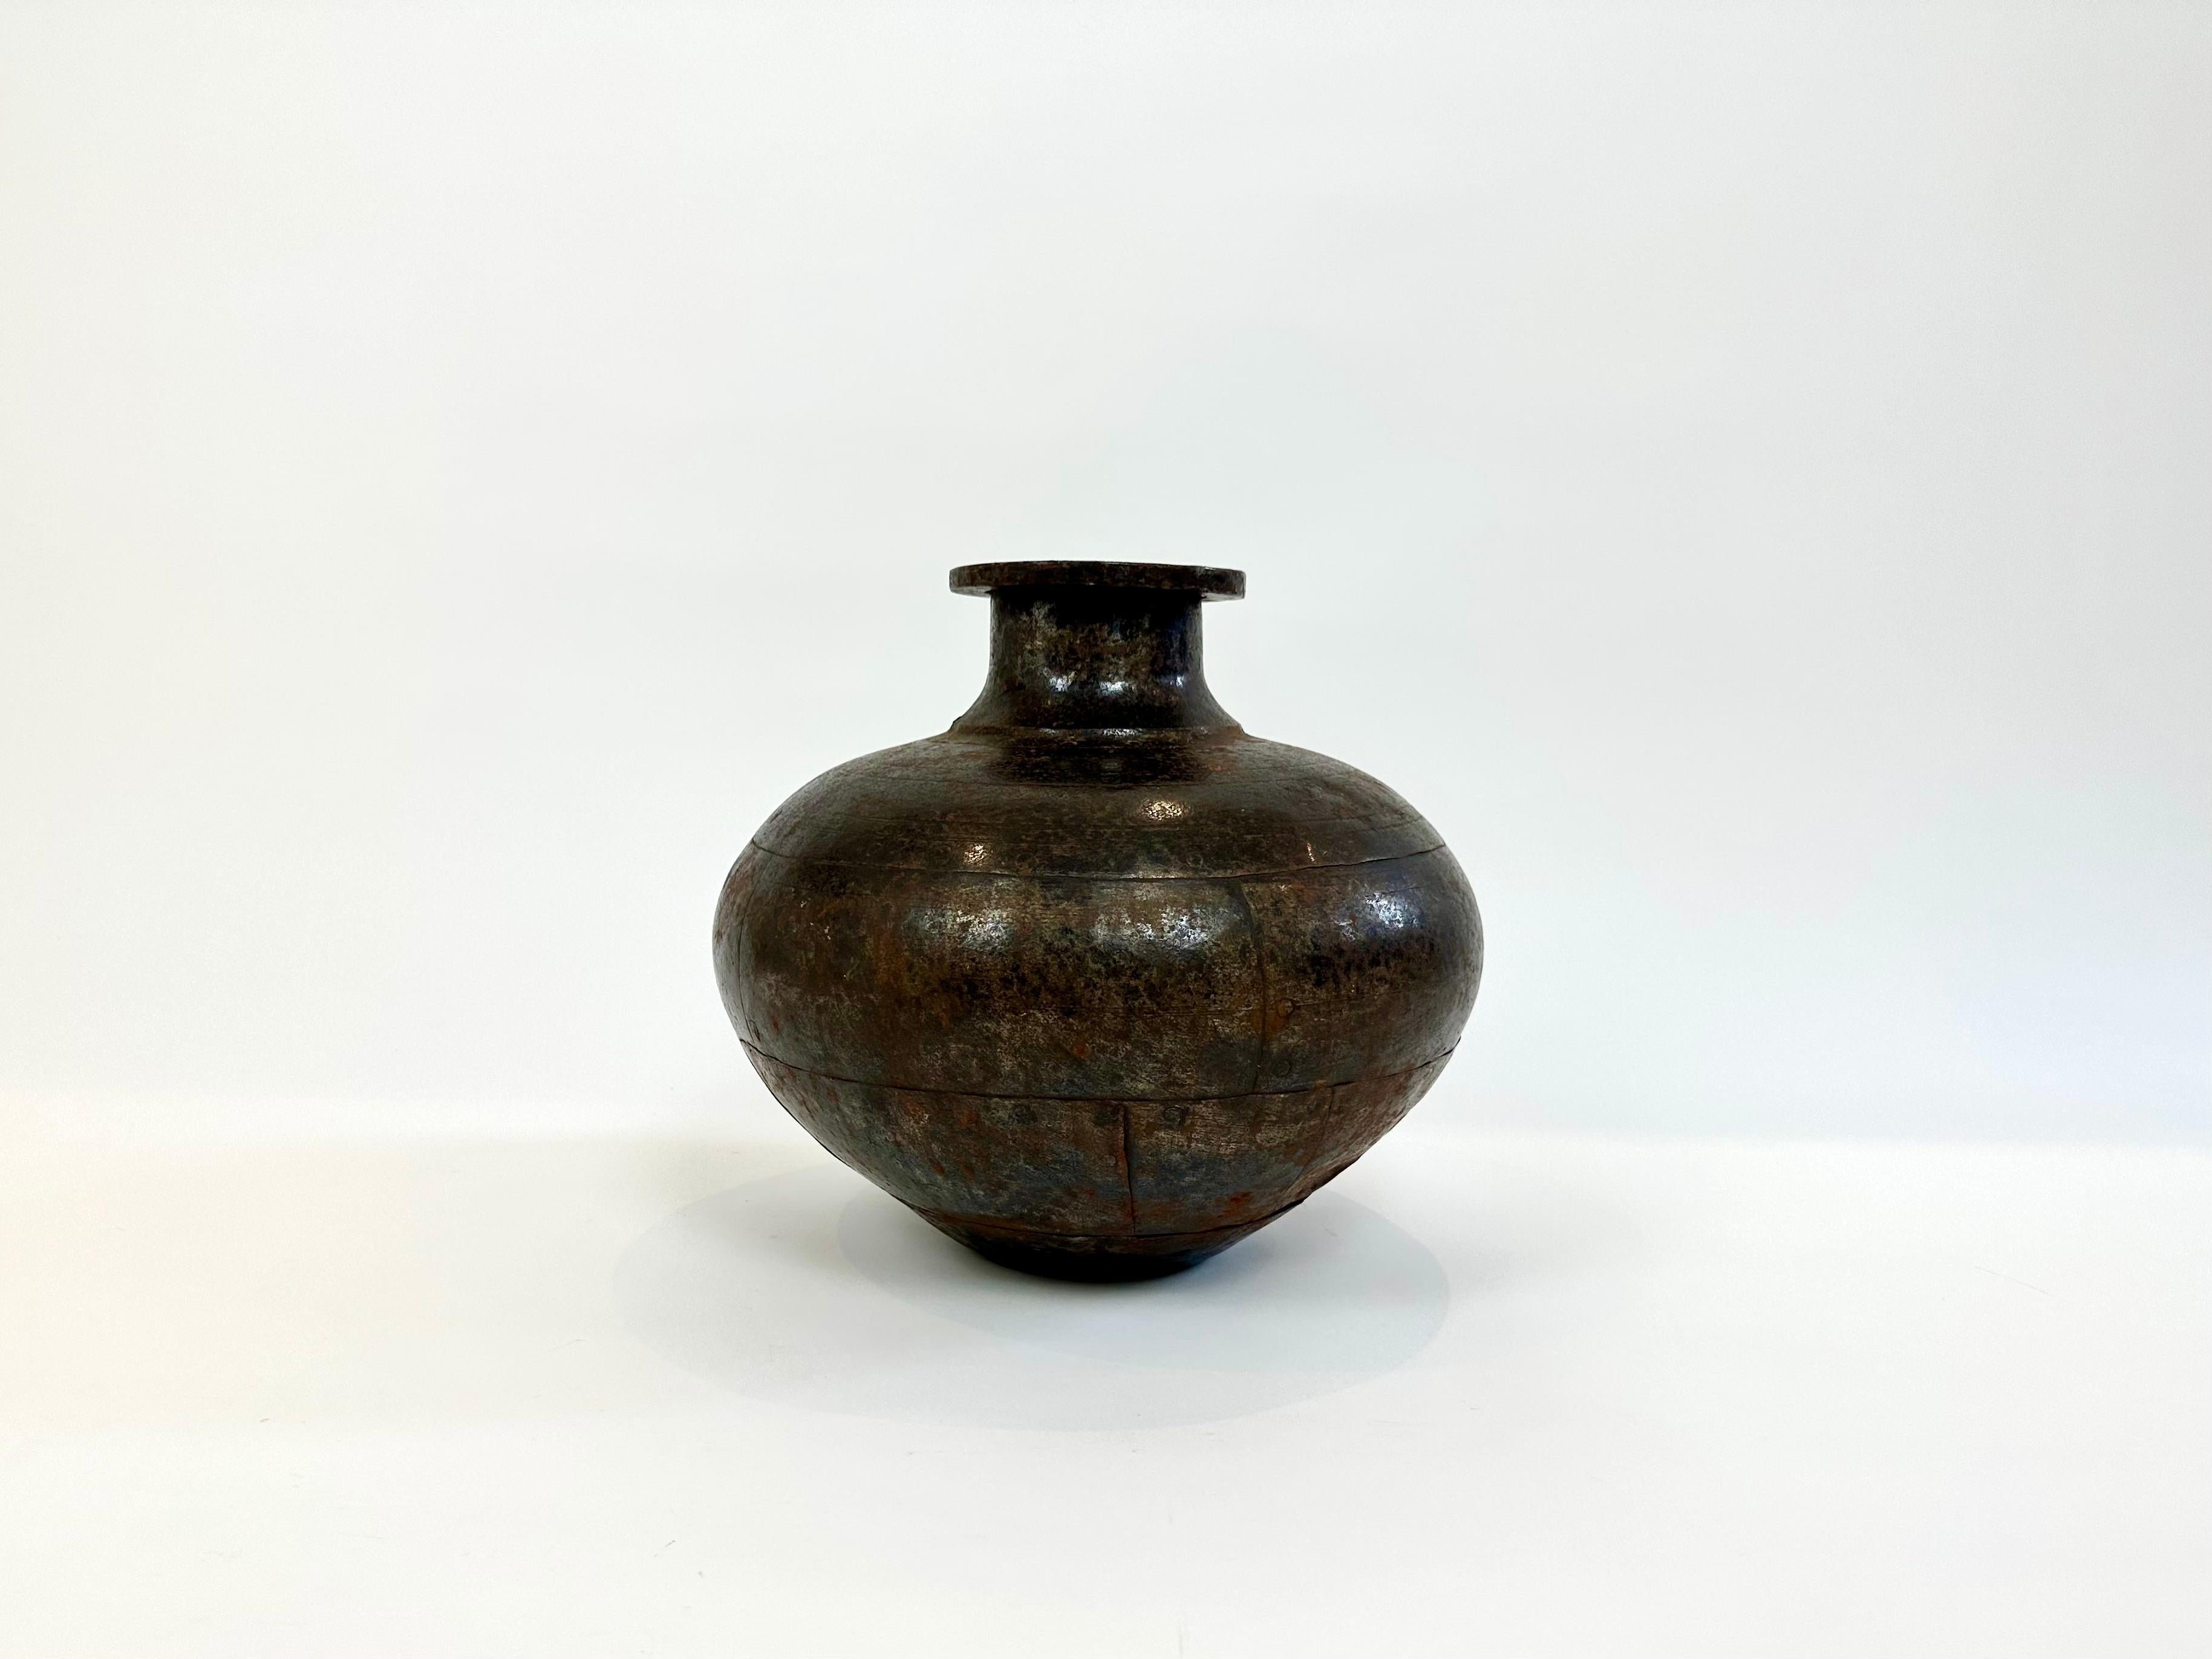 Großer rustikaler handgefertigter Metalltopf / Vase, ideal für Ausstellungszwecke.

Hervorragende Patina auf dem Metall, das gewachst wurde, um das Finish zu erhalten. 

Weltweiter Versand - Nachricht vor dem Kauf für ein Angebot an Ihr Ziel.